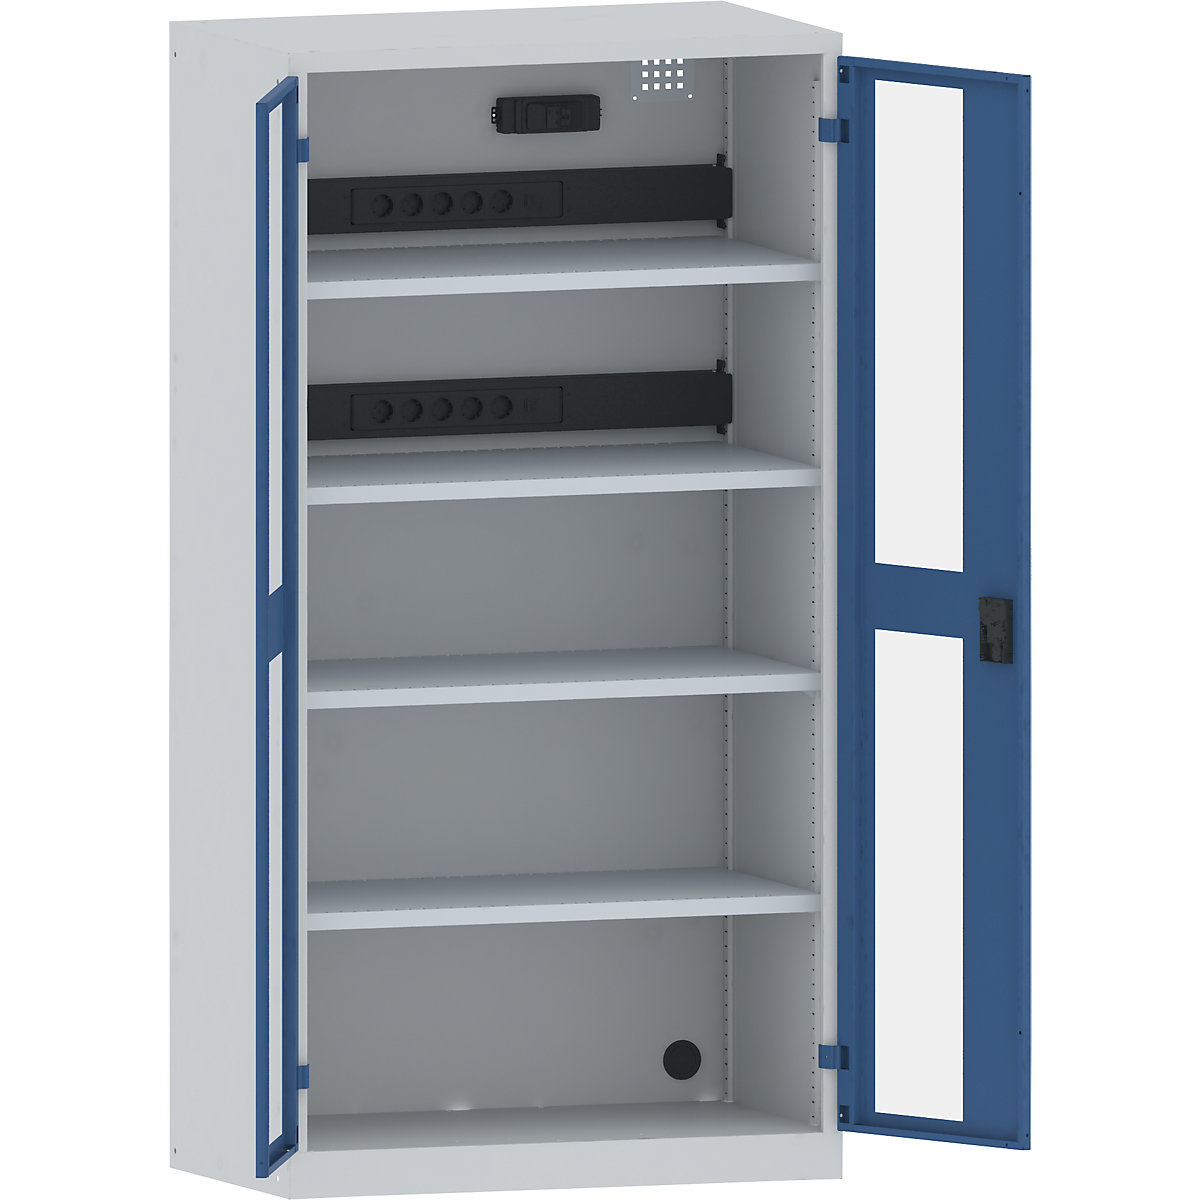 Accuoplaadkast met stroomvoorziening – LISTA, 4 legborden, deuren met zichtvenster, 2 contactdooslijsten op de achterkant met FI/LS-schakelaar, grijs/blauw-35